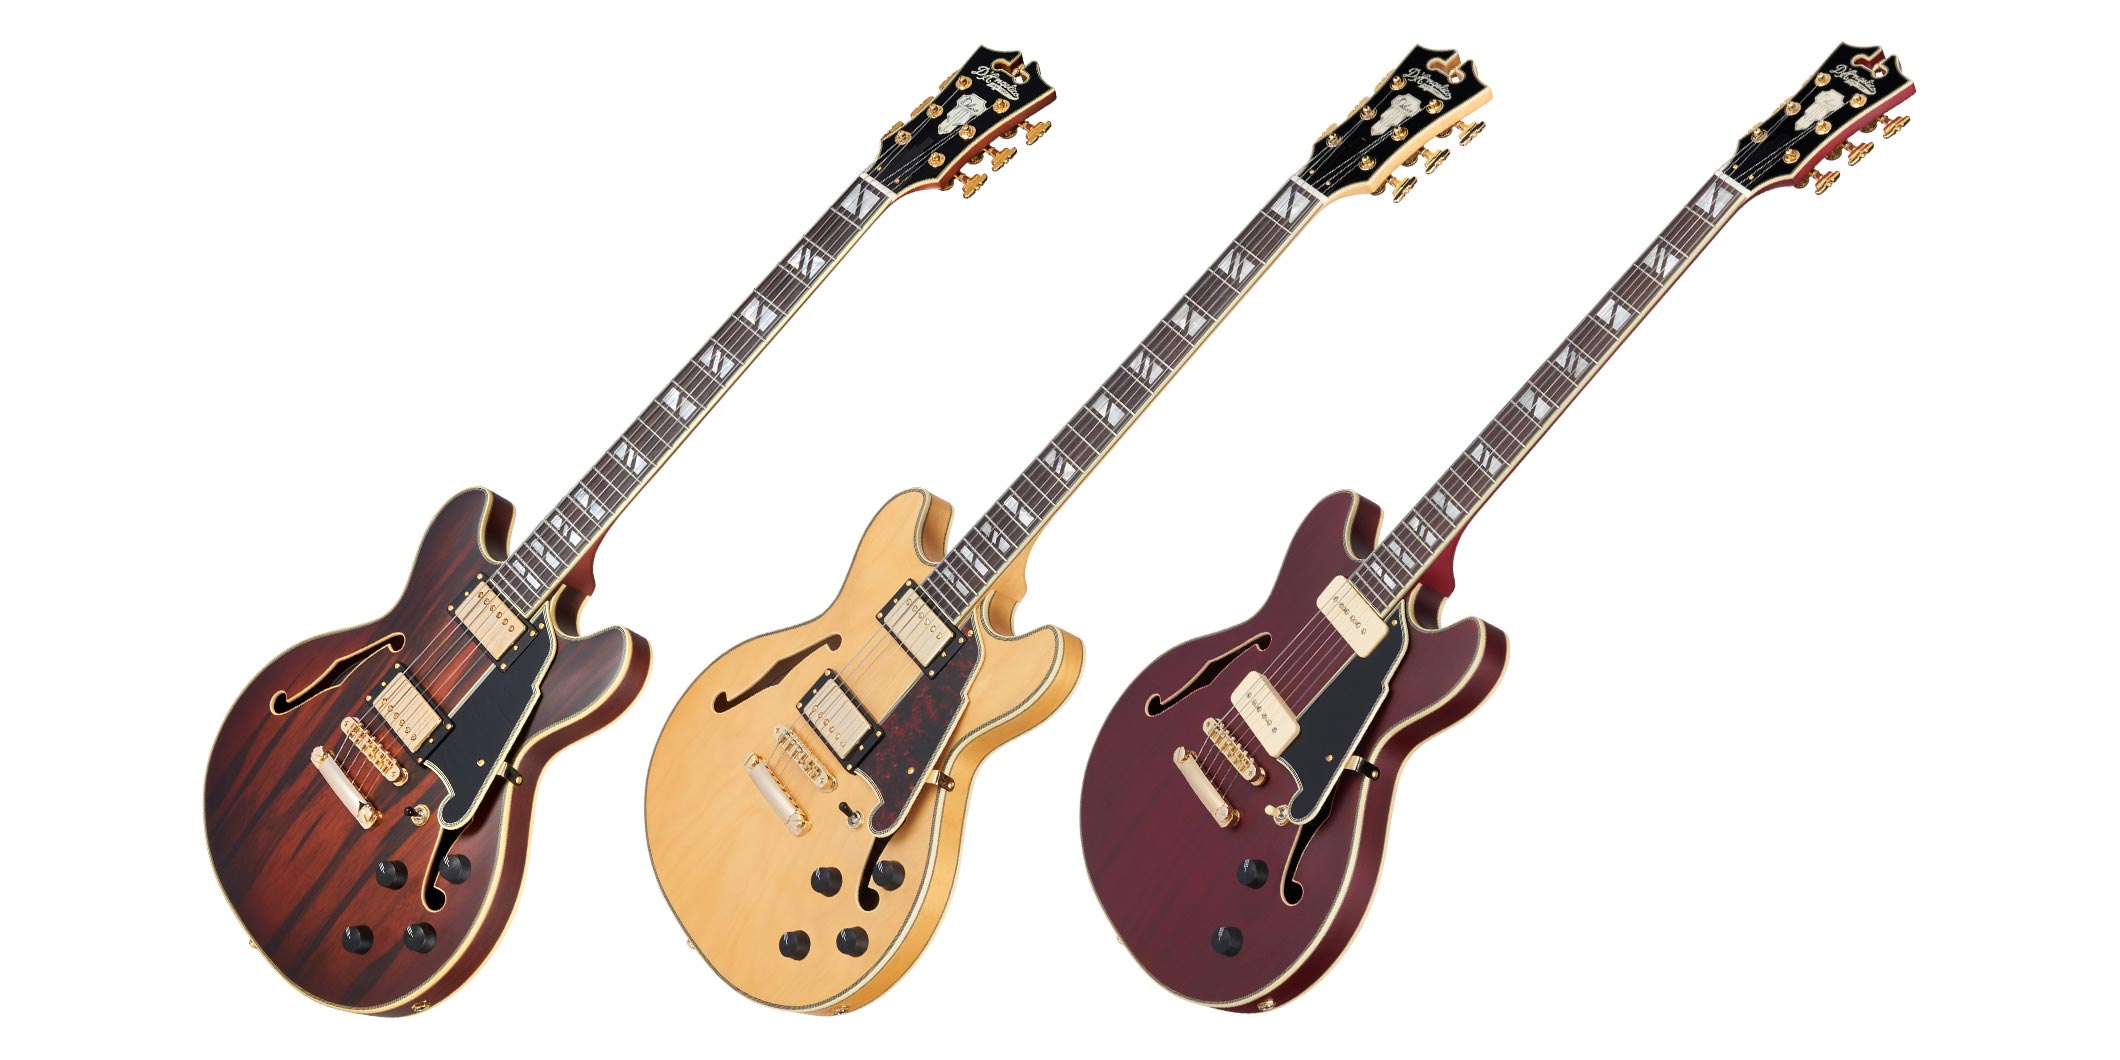 ディアンジェリコより、小振りなボディを持つセミホロウ・ギターの新製品が2機種登場